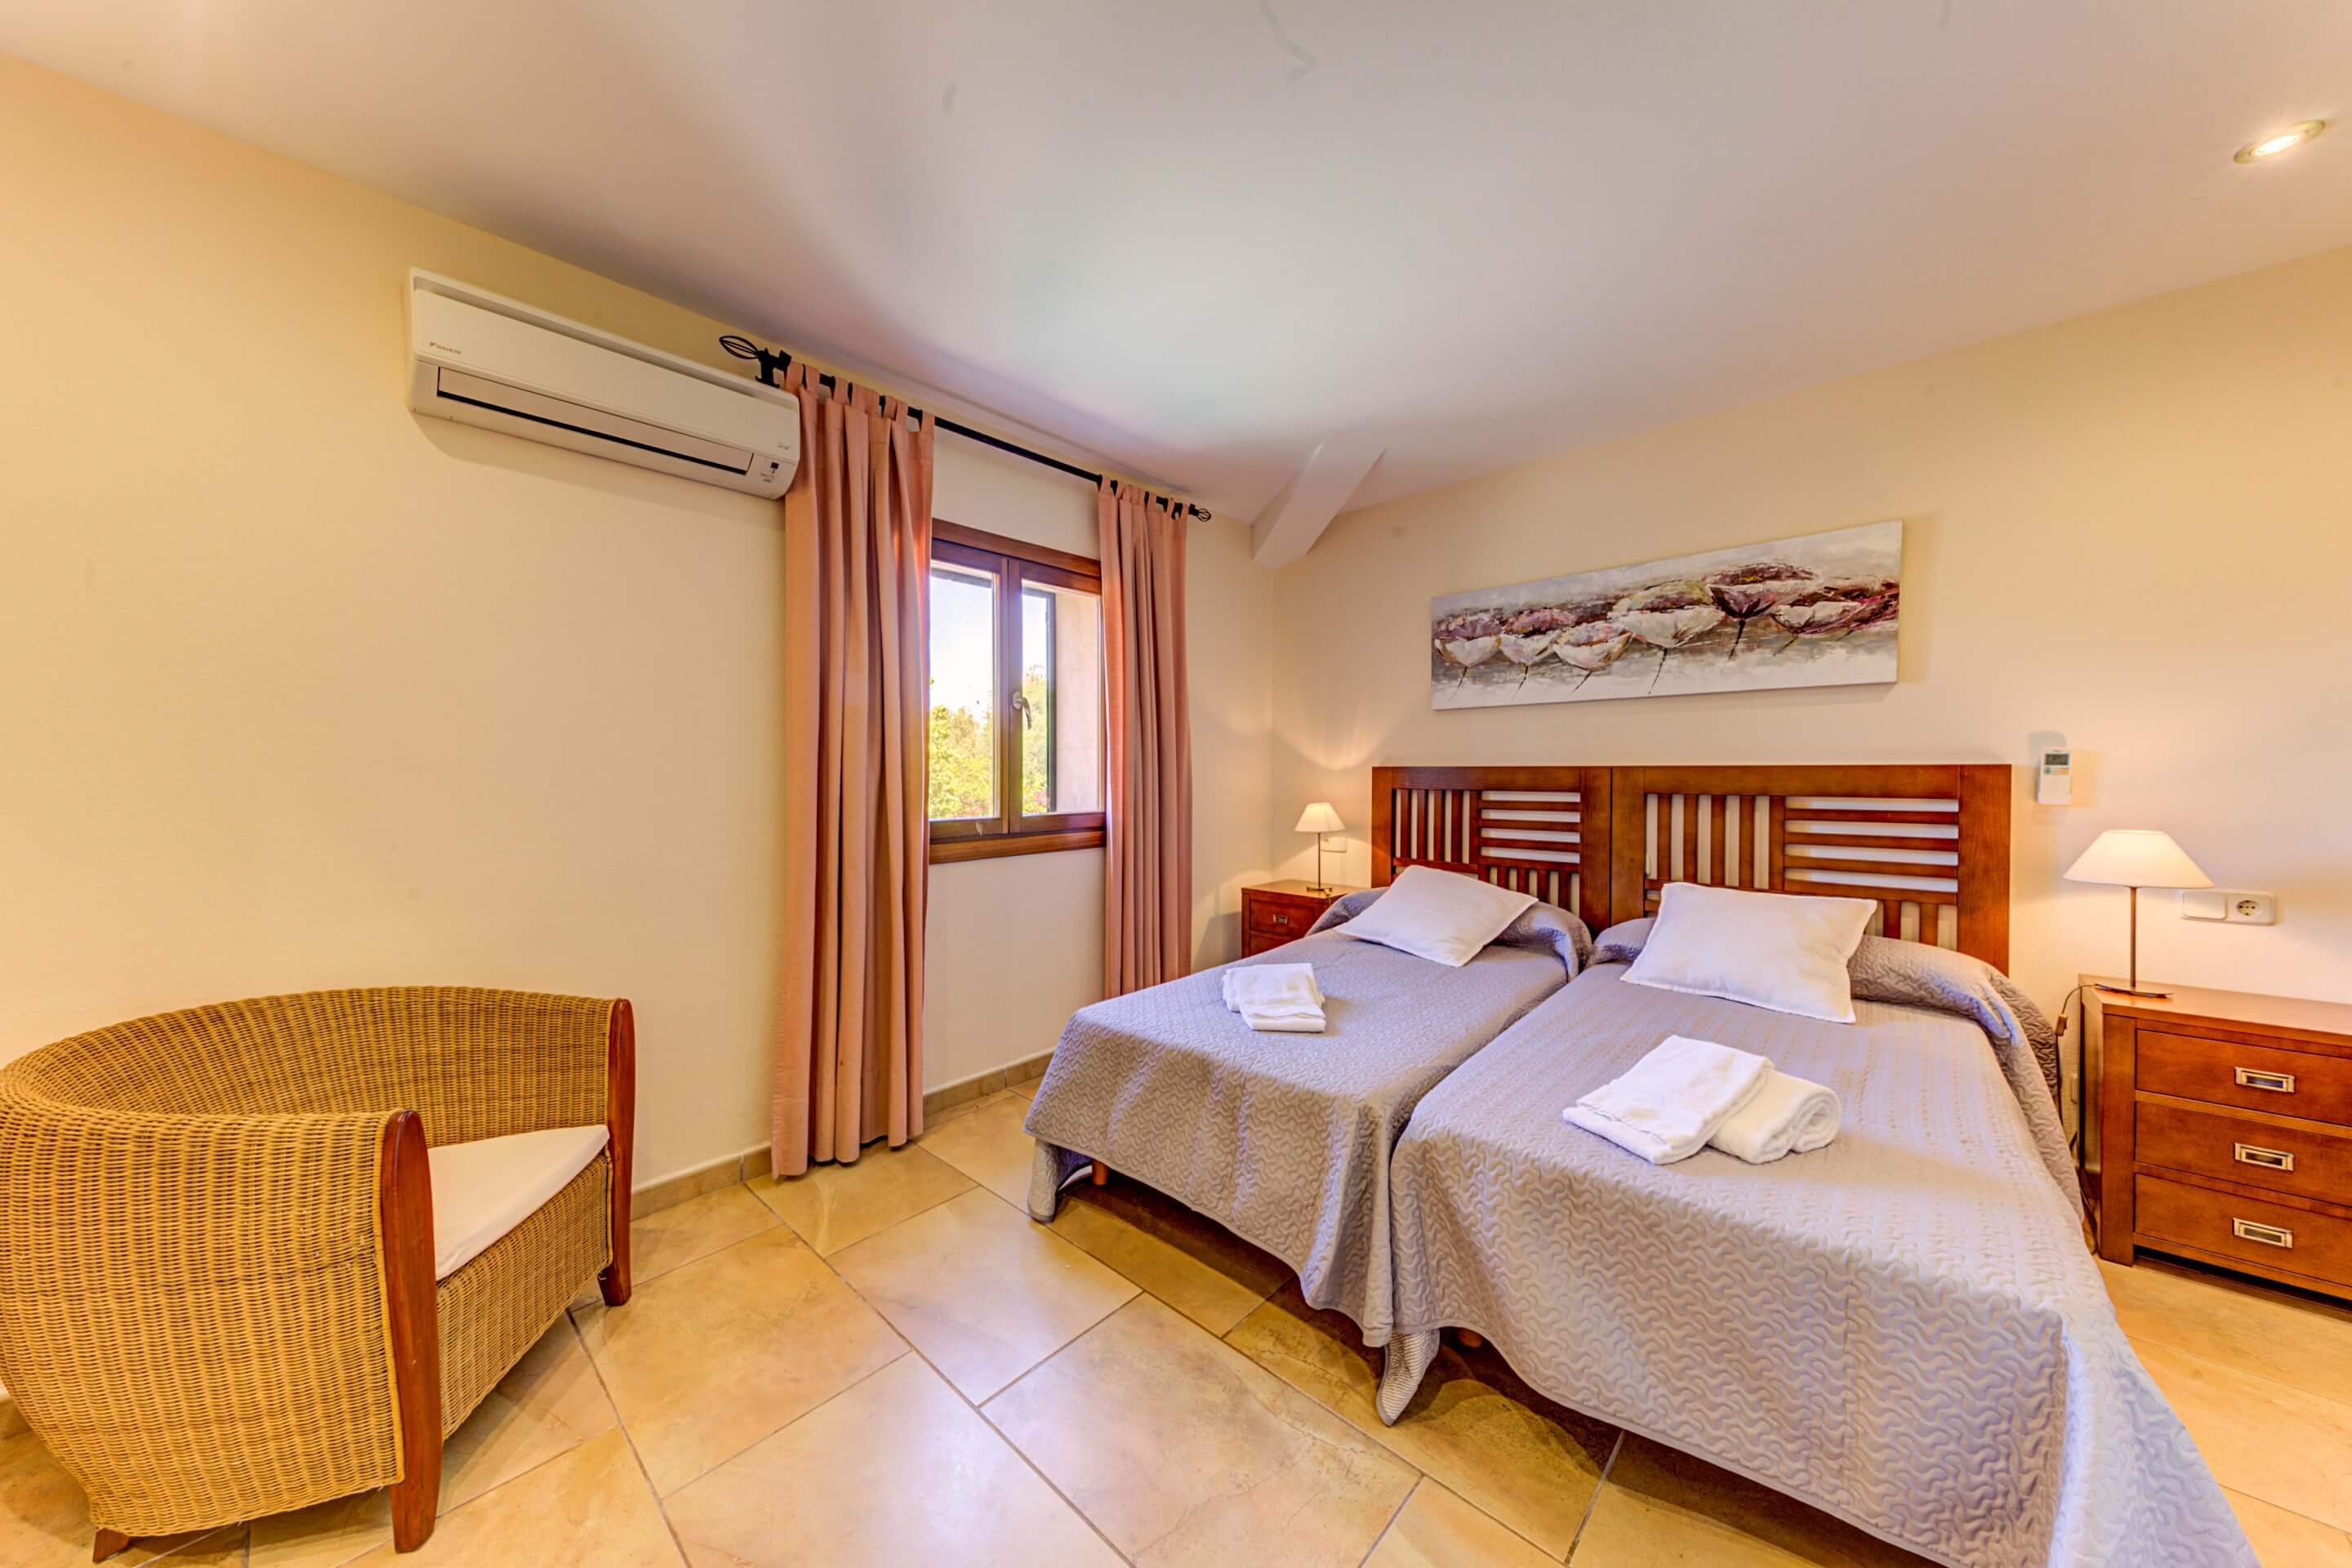 Pontarro, 2 bedroom villa in Pollensa & Puerto Pollensa, Majorca Photo #15